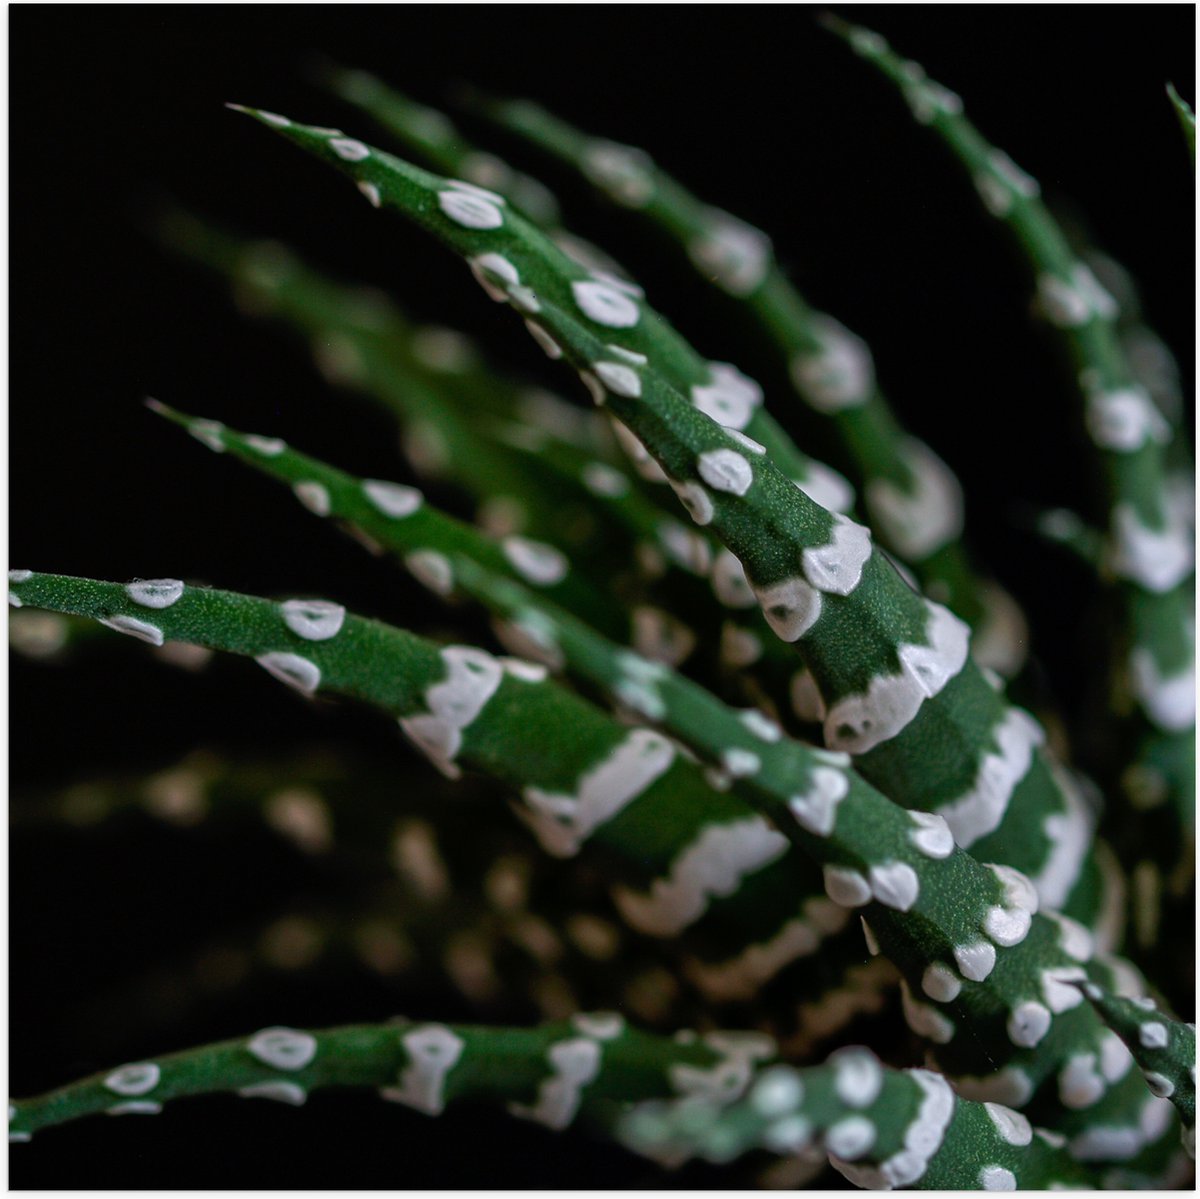 WallClassics - Poster (Mat) - Fasciated haworthia Plant tegen Zwarte Achtergrond - 50x50 cm Foto op Posterpapier met een Matte look